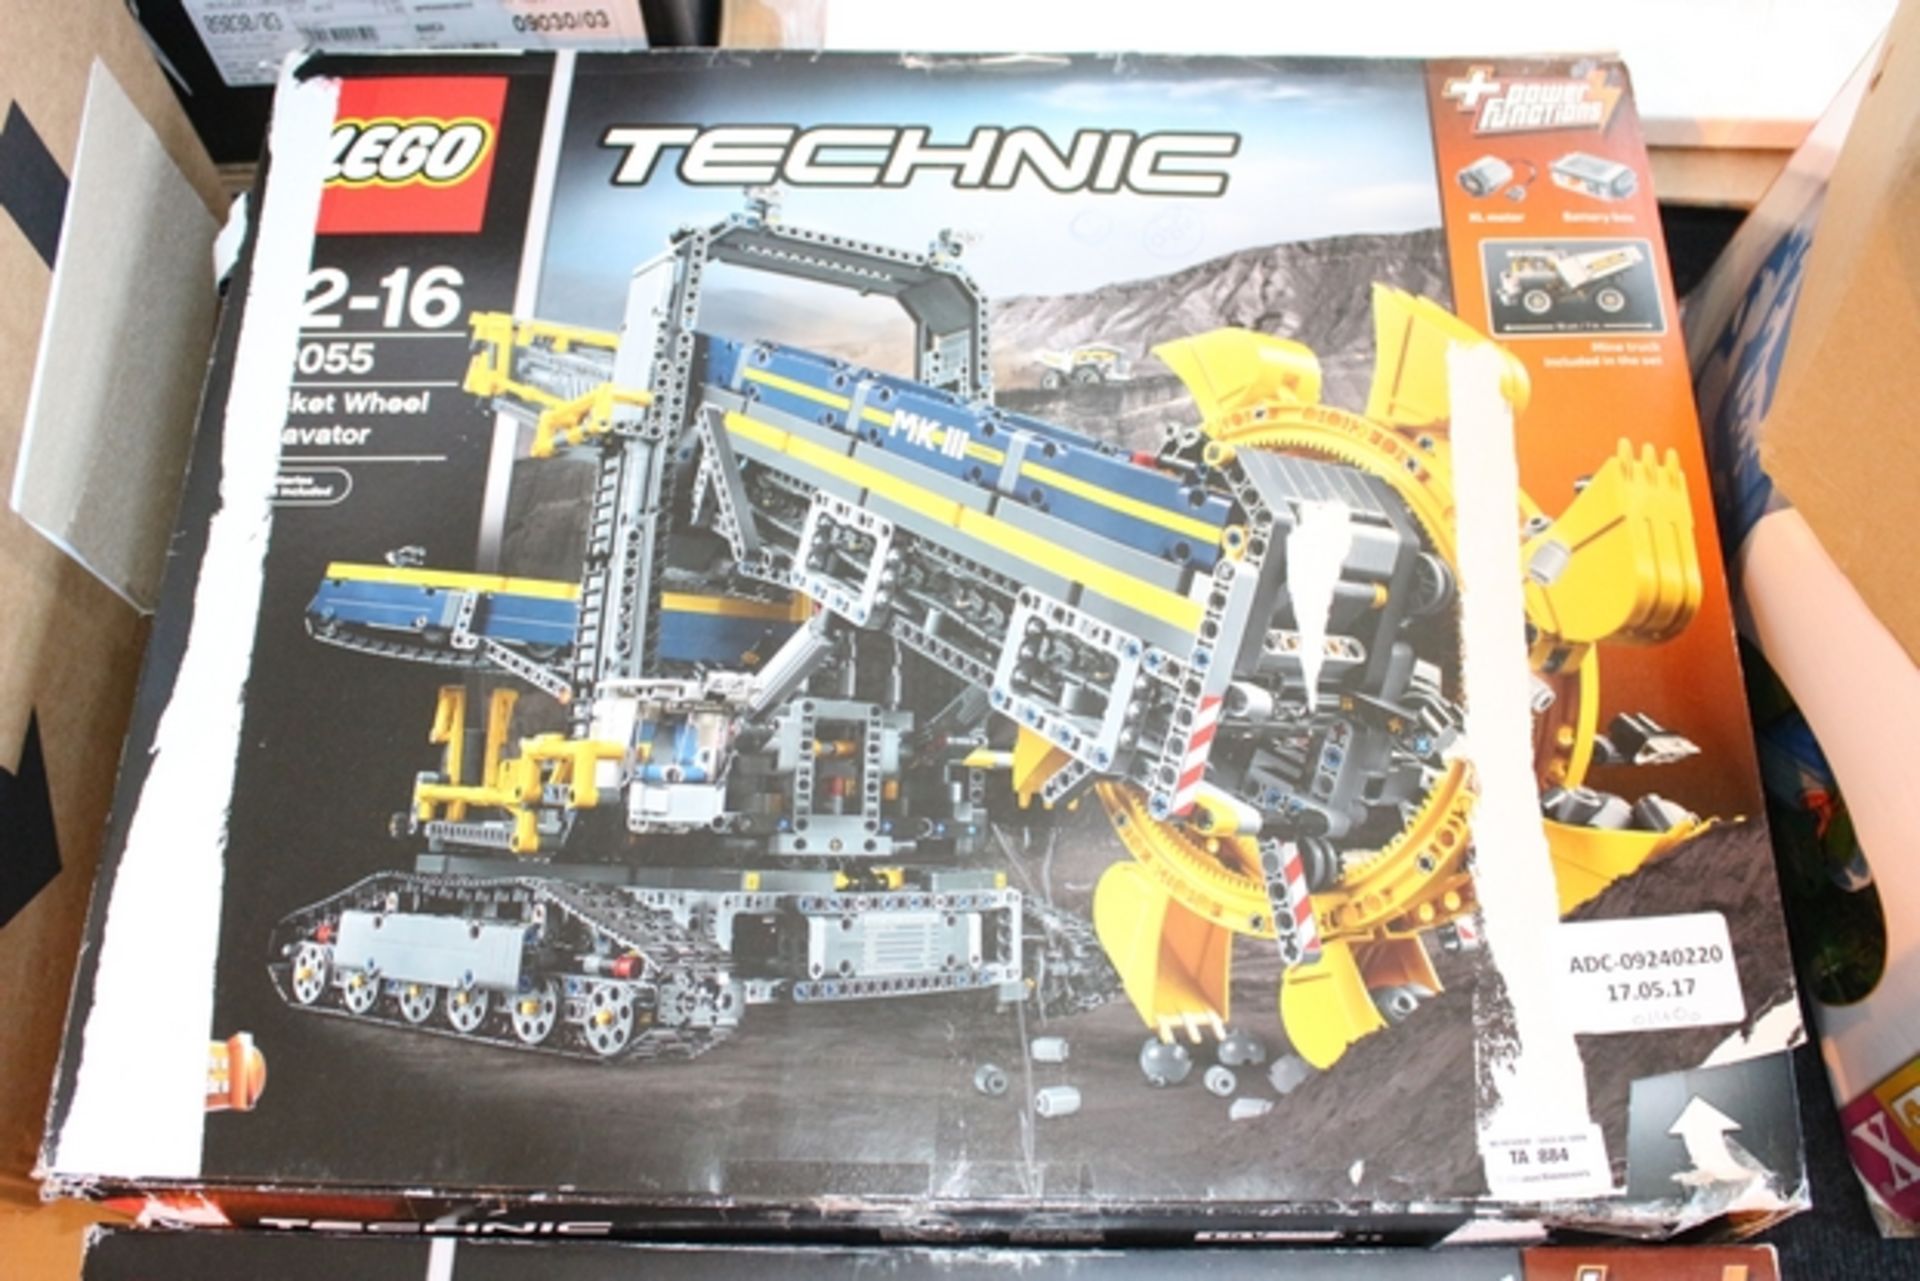 1X BOXED LEGO TECHNIC EXCAVATOR 2055 (ADC-09240220) (17/05/17)